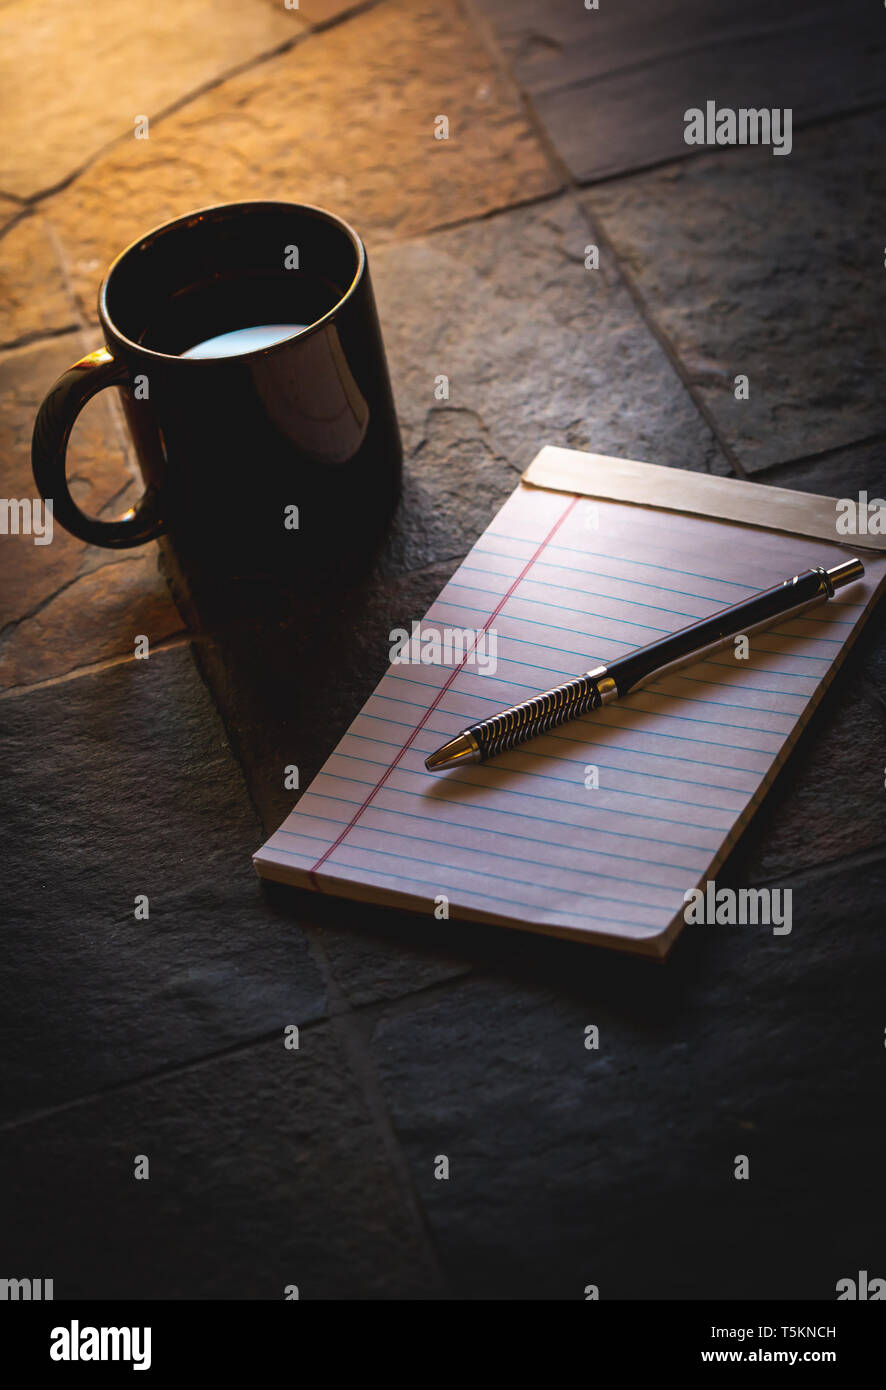 Schwarze Becher Kaffee auf einem steinernen Tisch neben einem Notebook am frühen Morgen Licht des Frühlings. Die sich früh auf die Organisation und produktiv zu arbeiten. Stockfoto